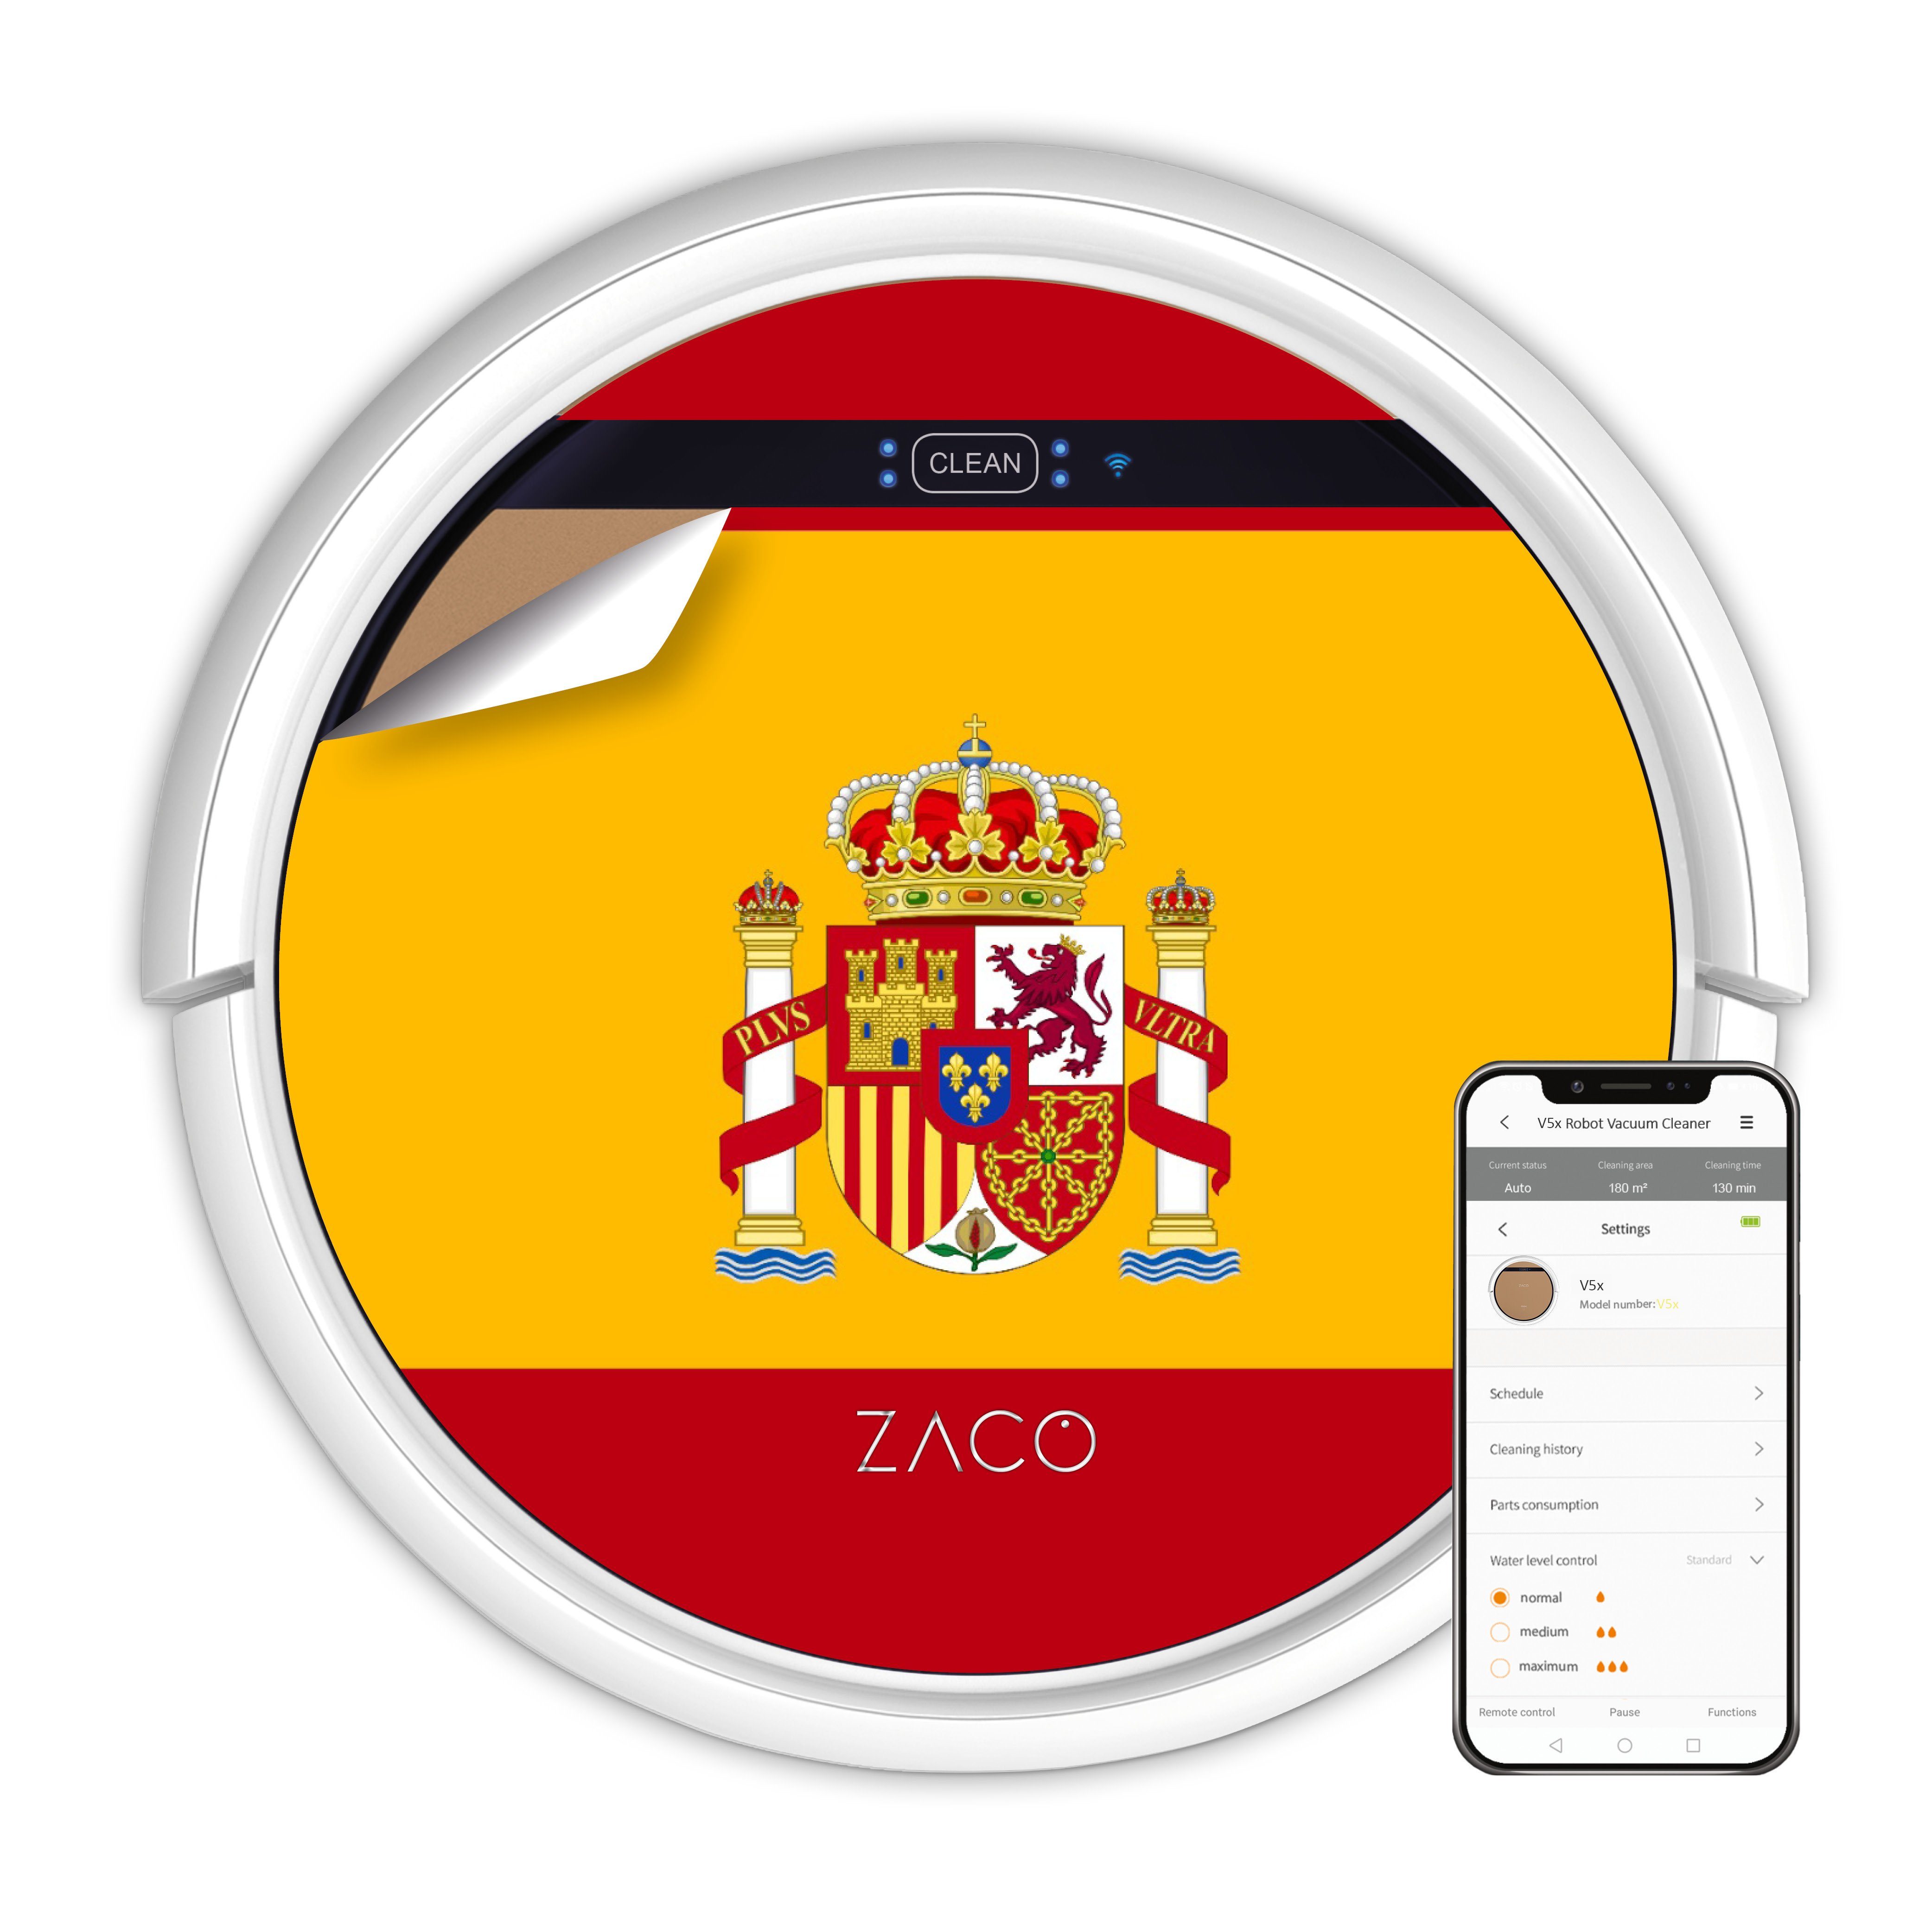 ZACO Nass-Trocken-Saugroboter V5x, 22 W, beutellos, mit Wischfunktion, App, Alexa Sprachsteuerung, Tierhaar, Timer, leise